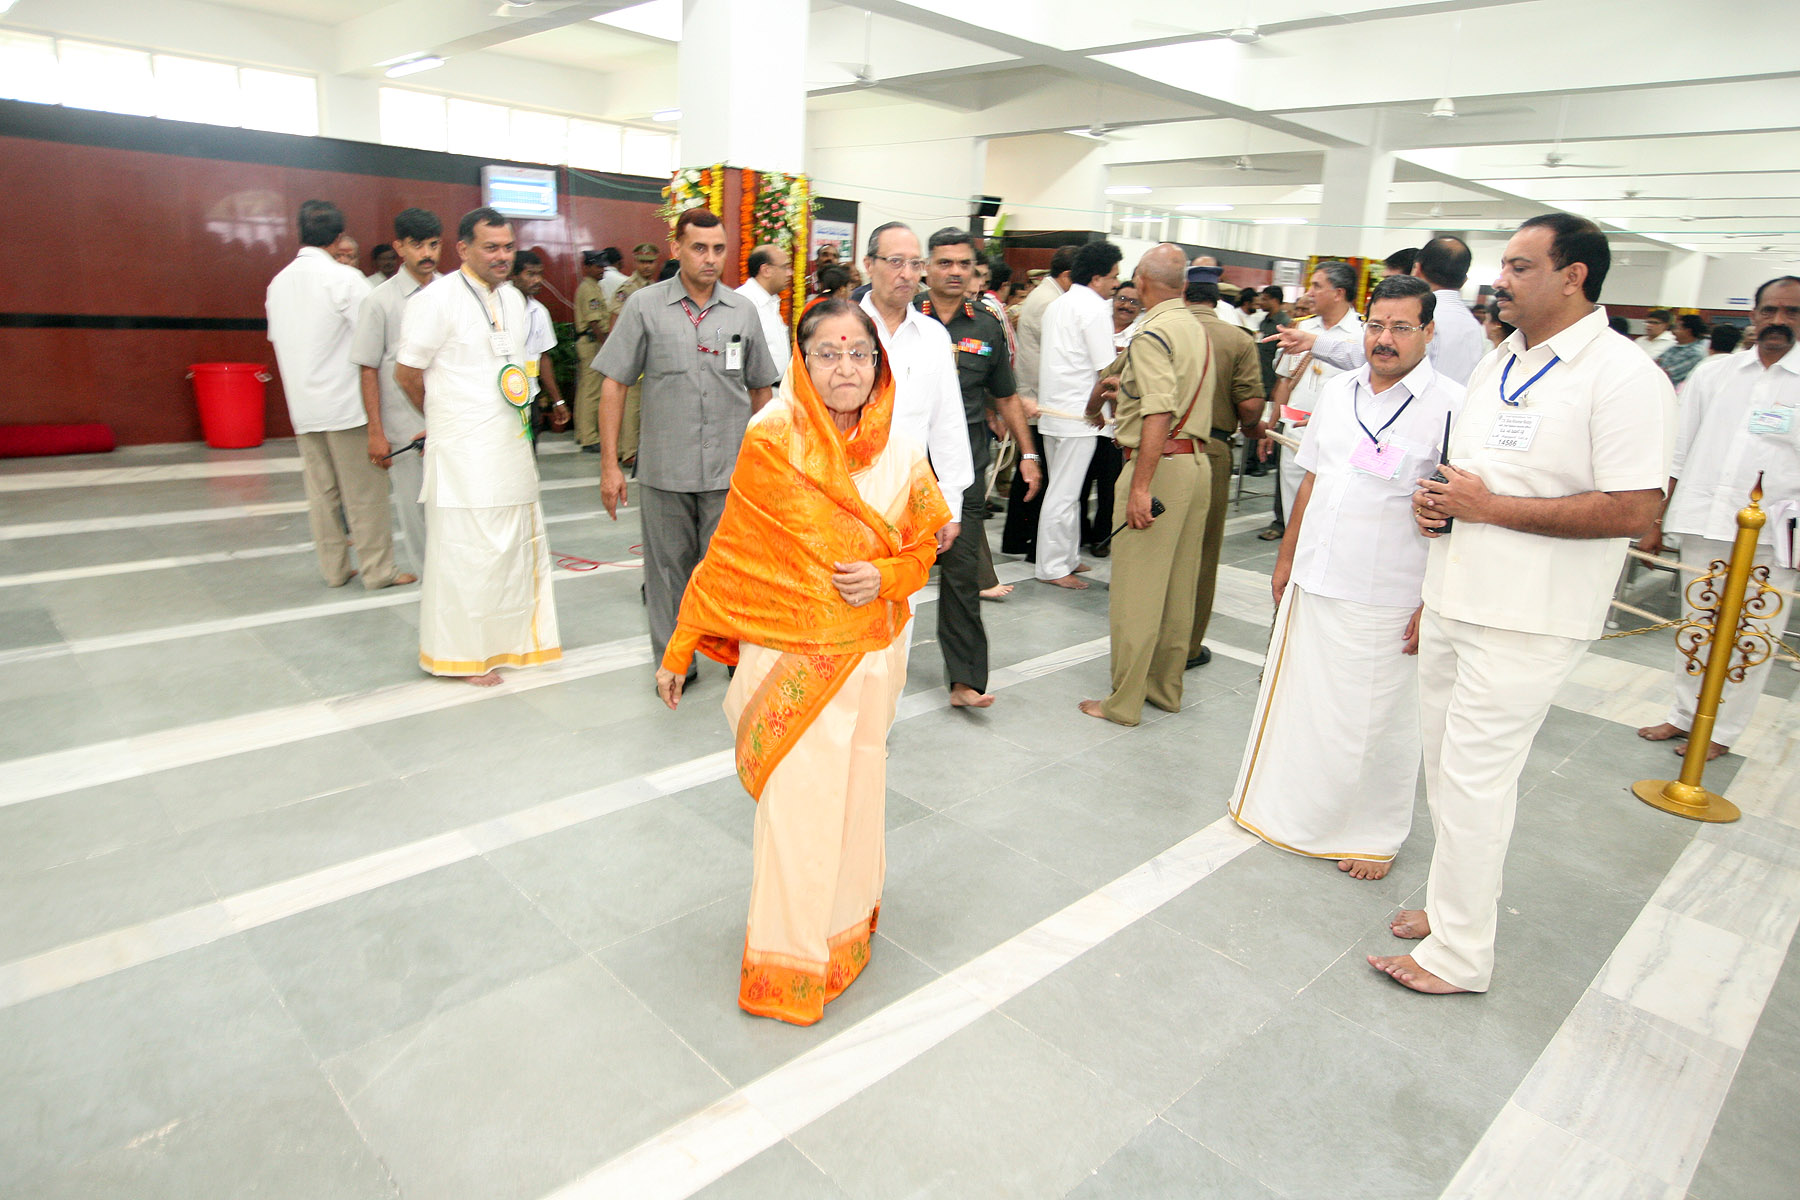 Exclusive Tirupati Balaji NRI Darshan for Foreign Visitors